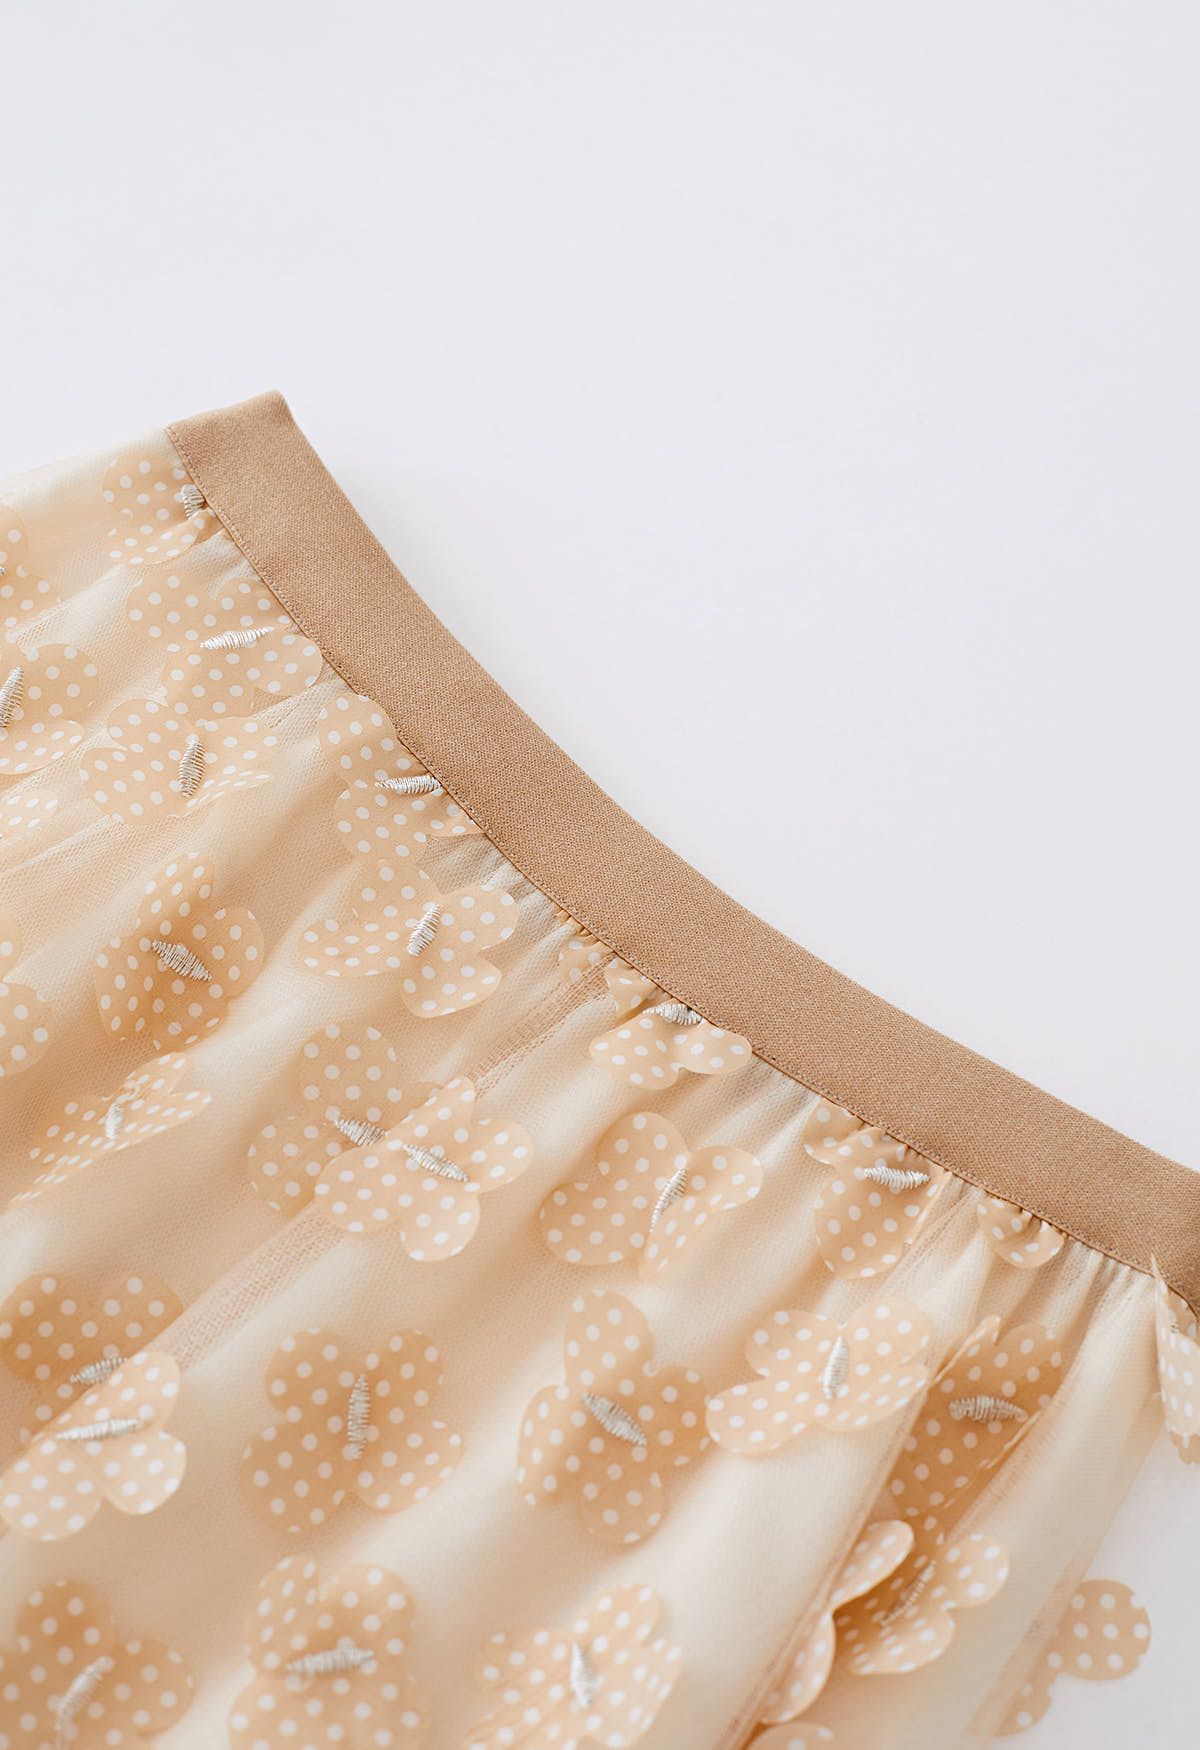 Falda de malla de doble capa con mariposa punteada en 3D en tostado claro